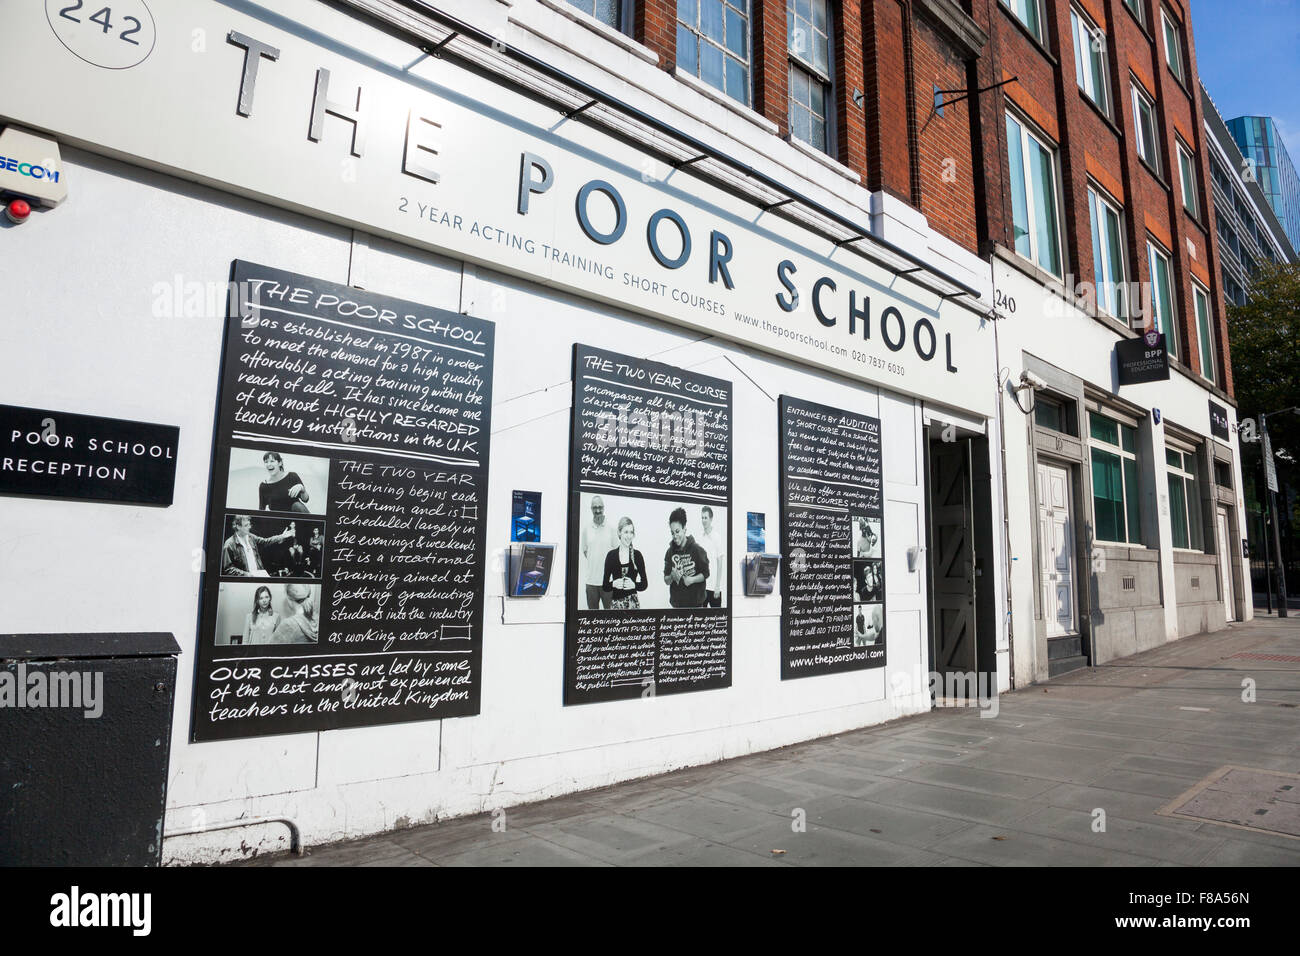 La escuela pobre - escuela de teatro en King's Cross, London, UK Foto de stock